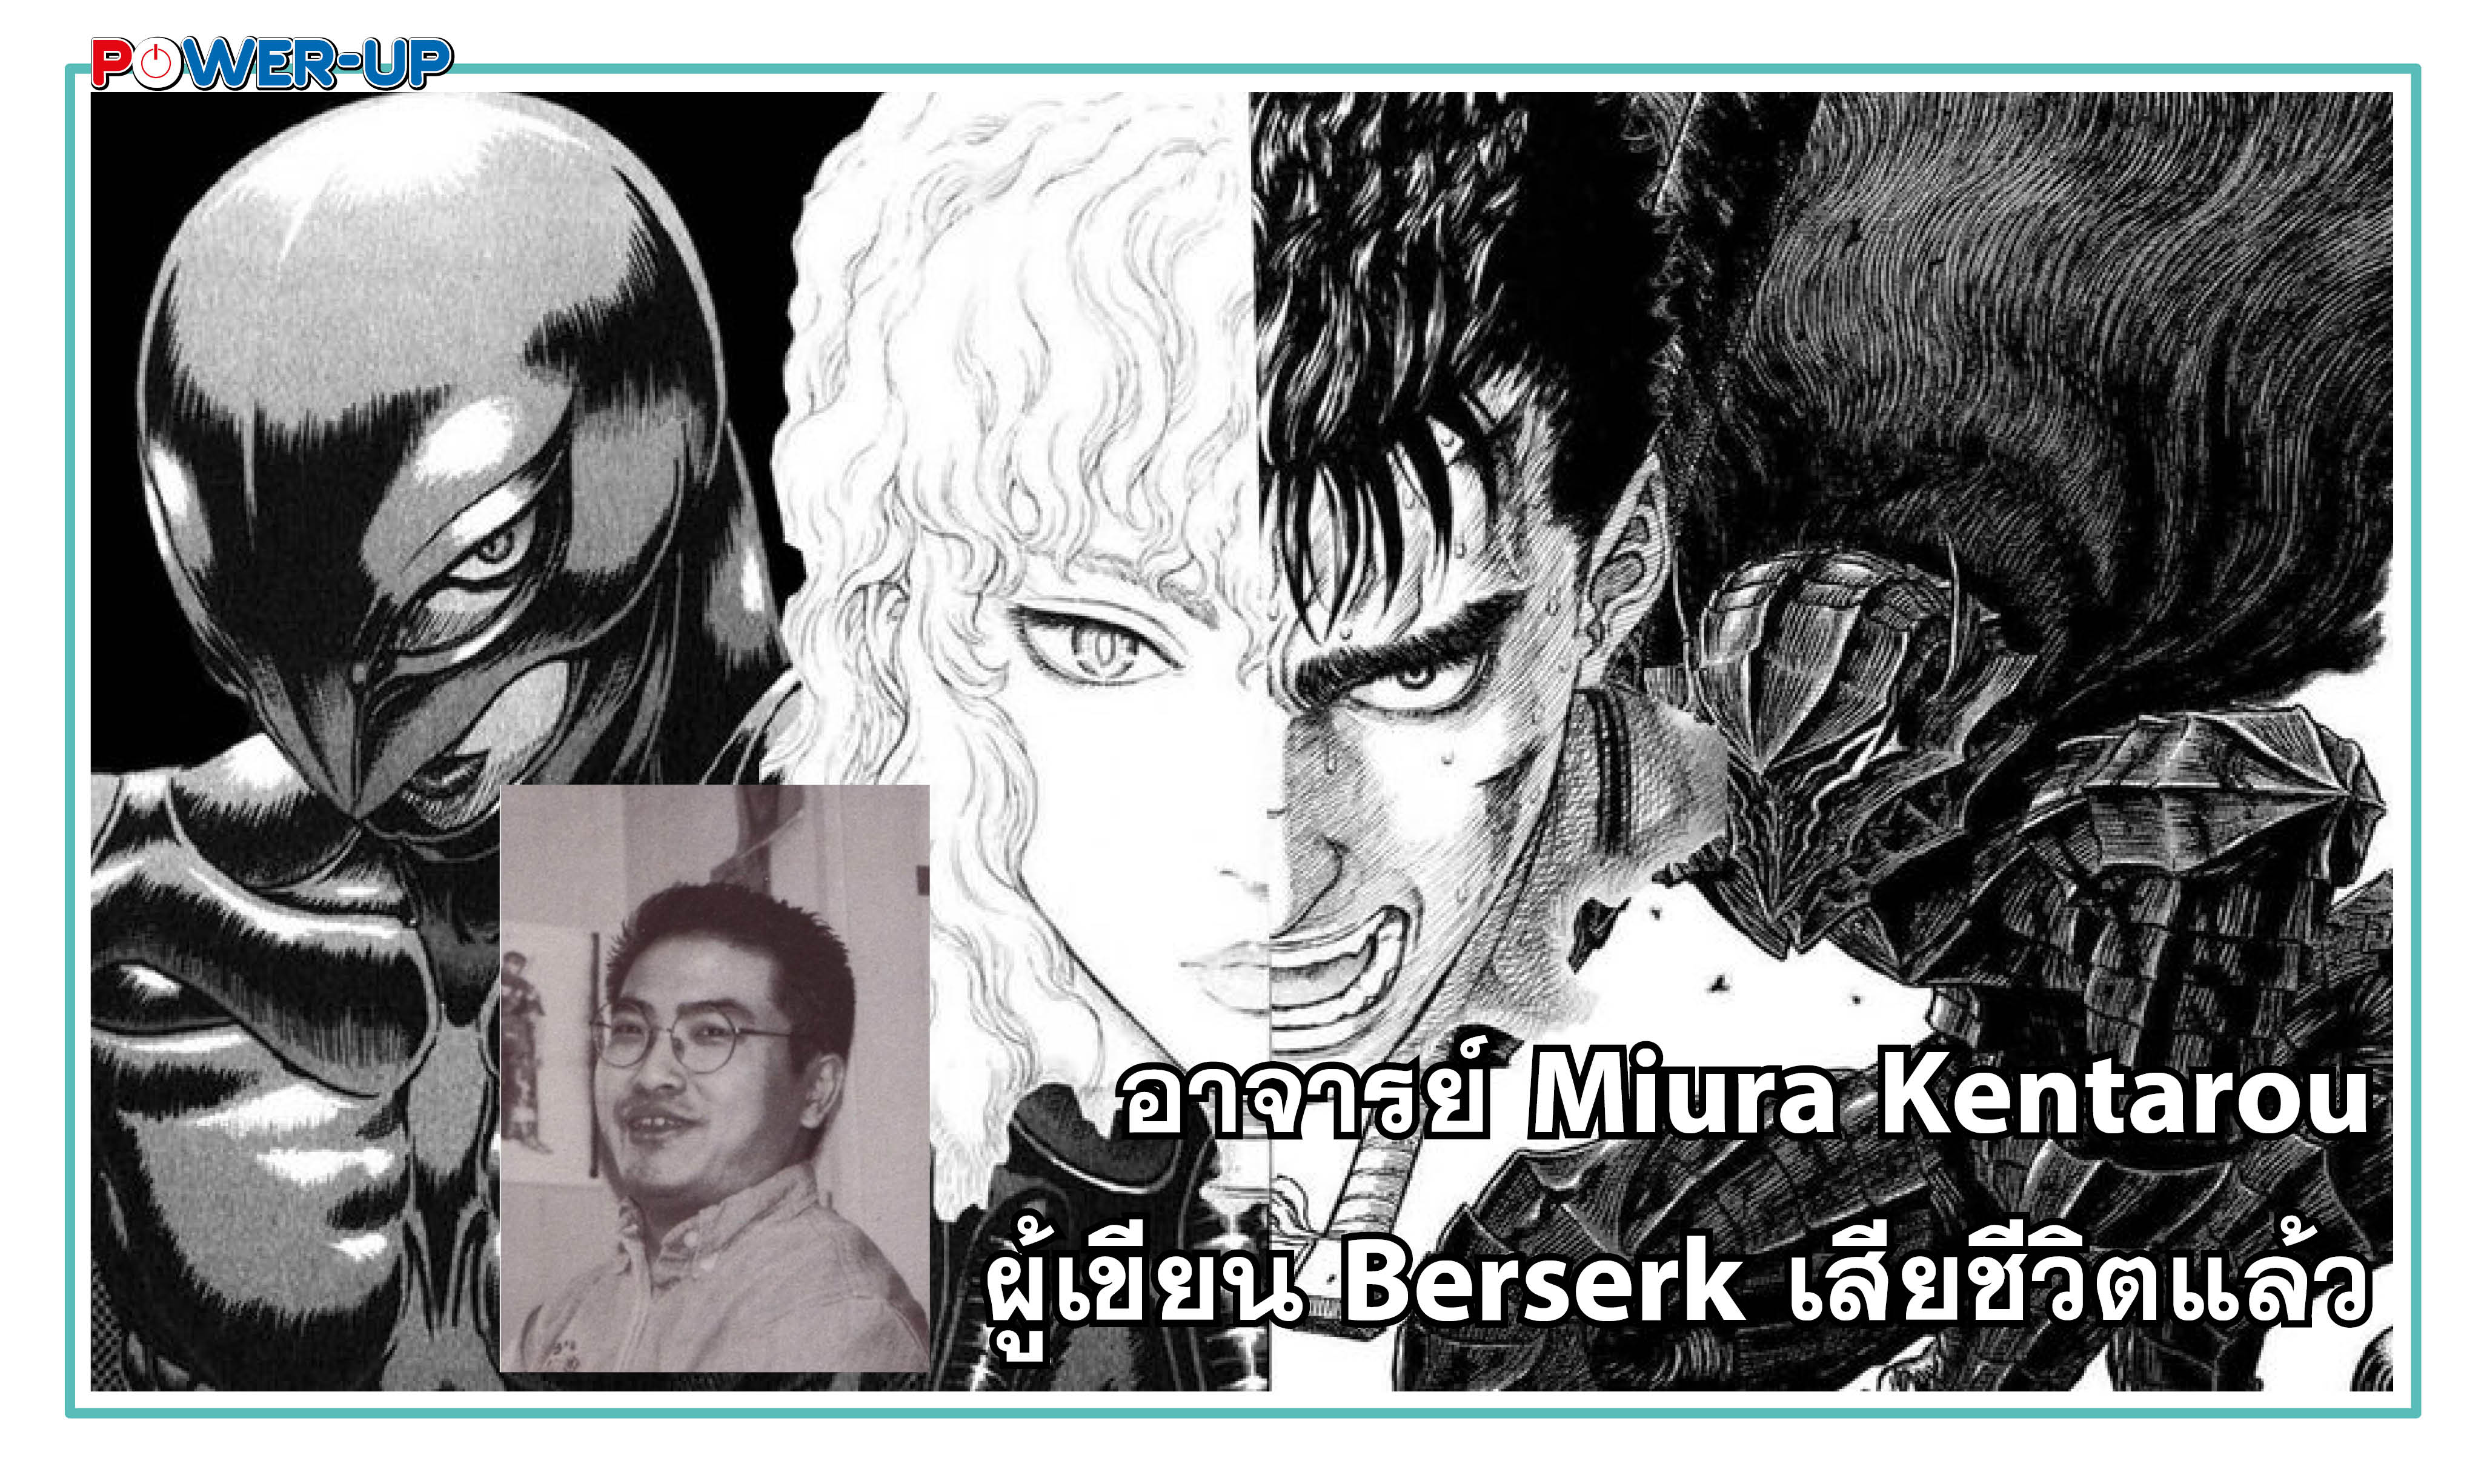 อาจารย์ Miura Kentarou ผู้เขียน Berserk เสียชีวิตแล้ว